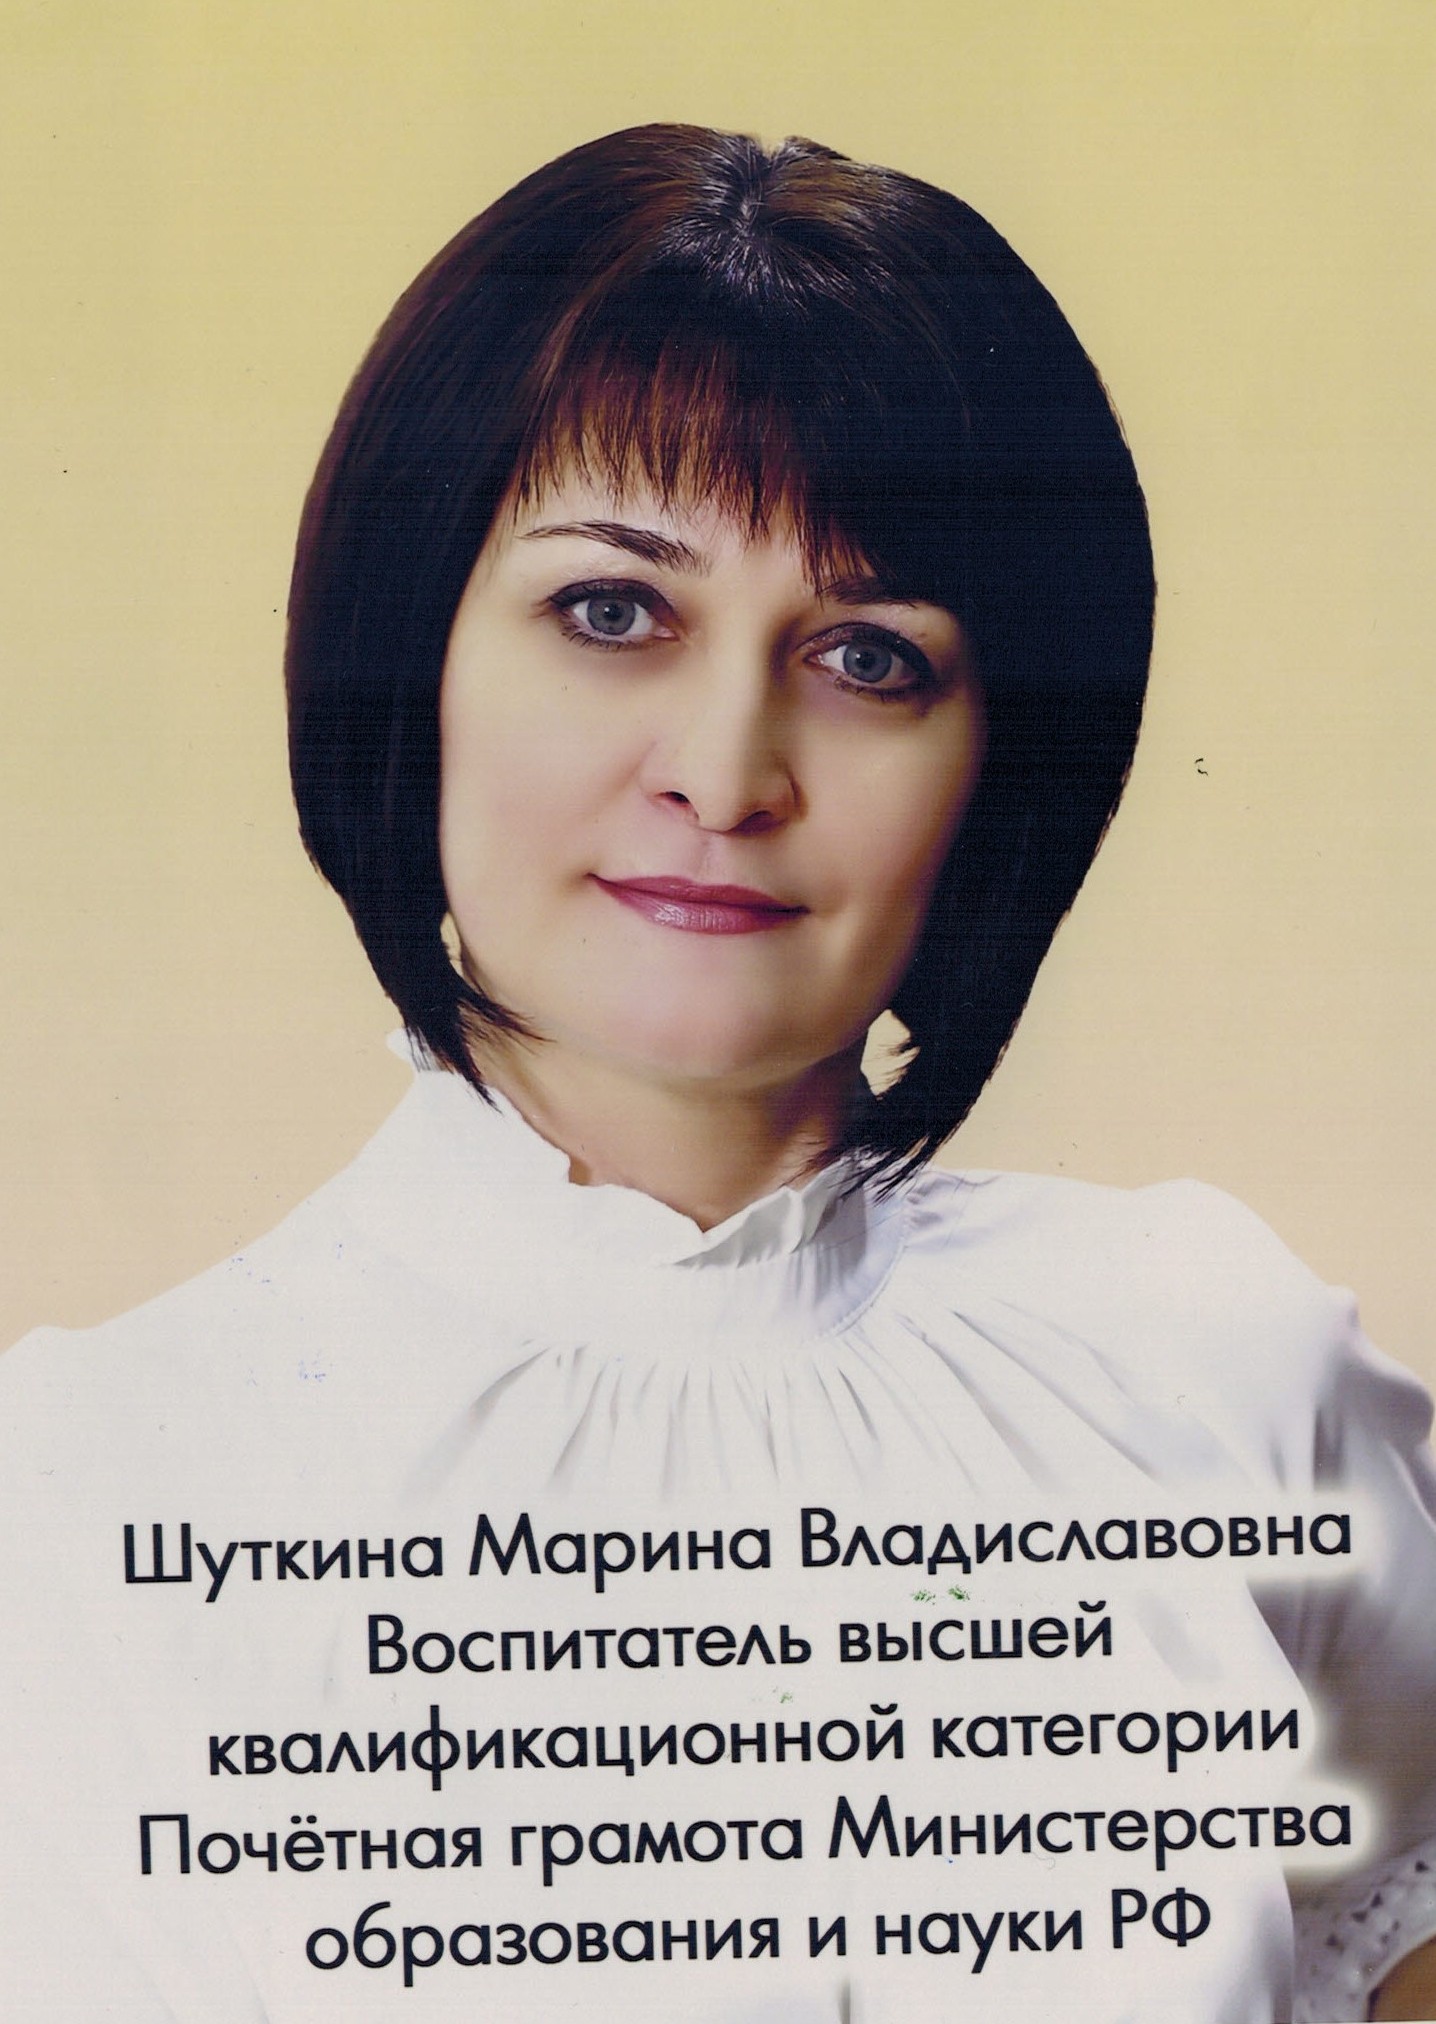 Воспитатель Шуткина Марина Владиславовна.